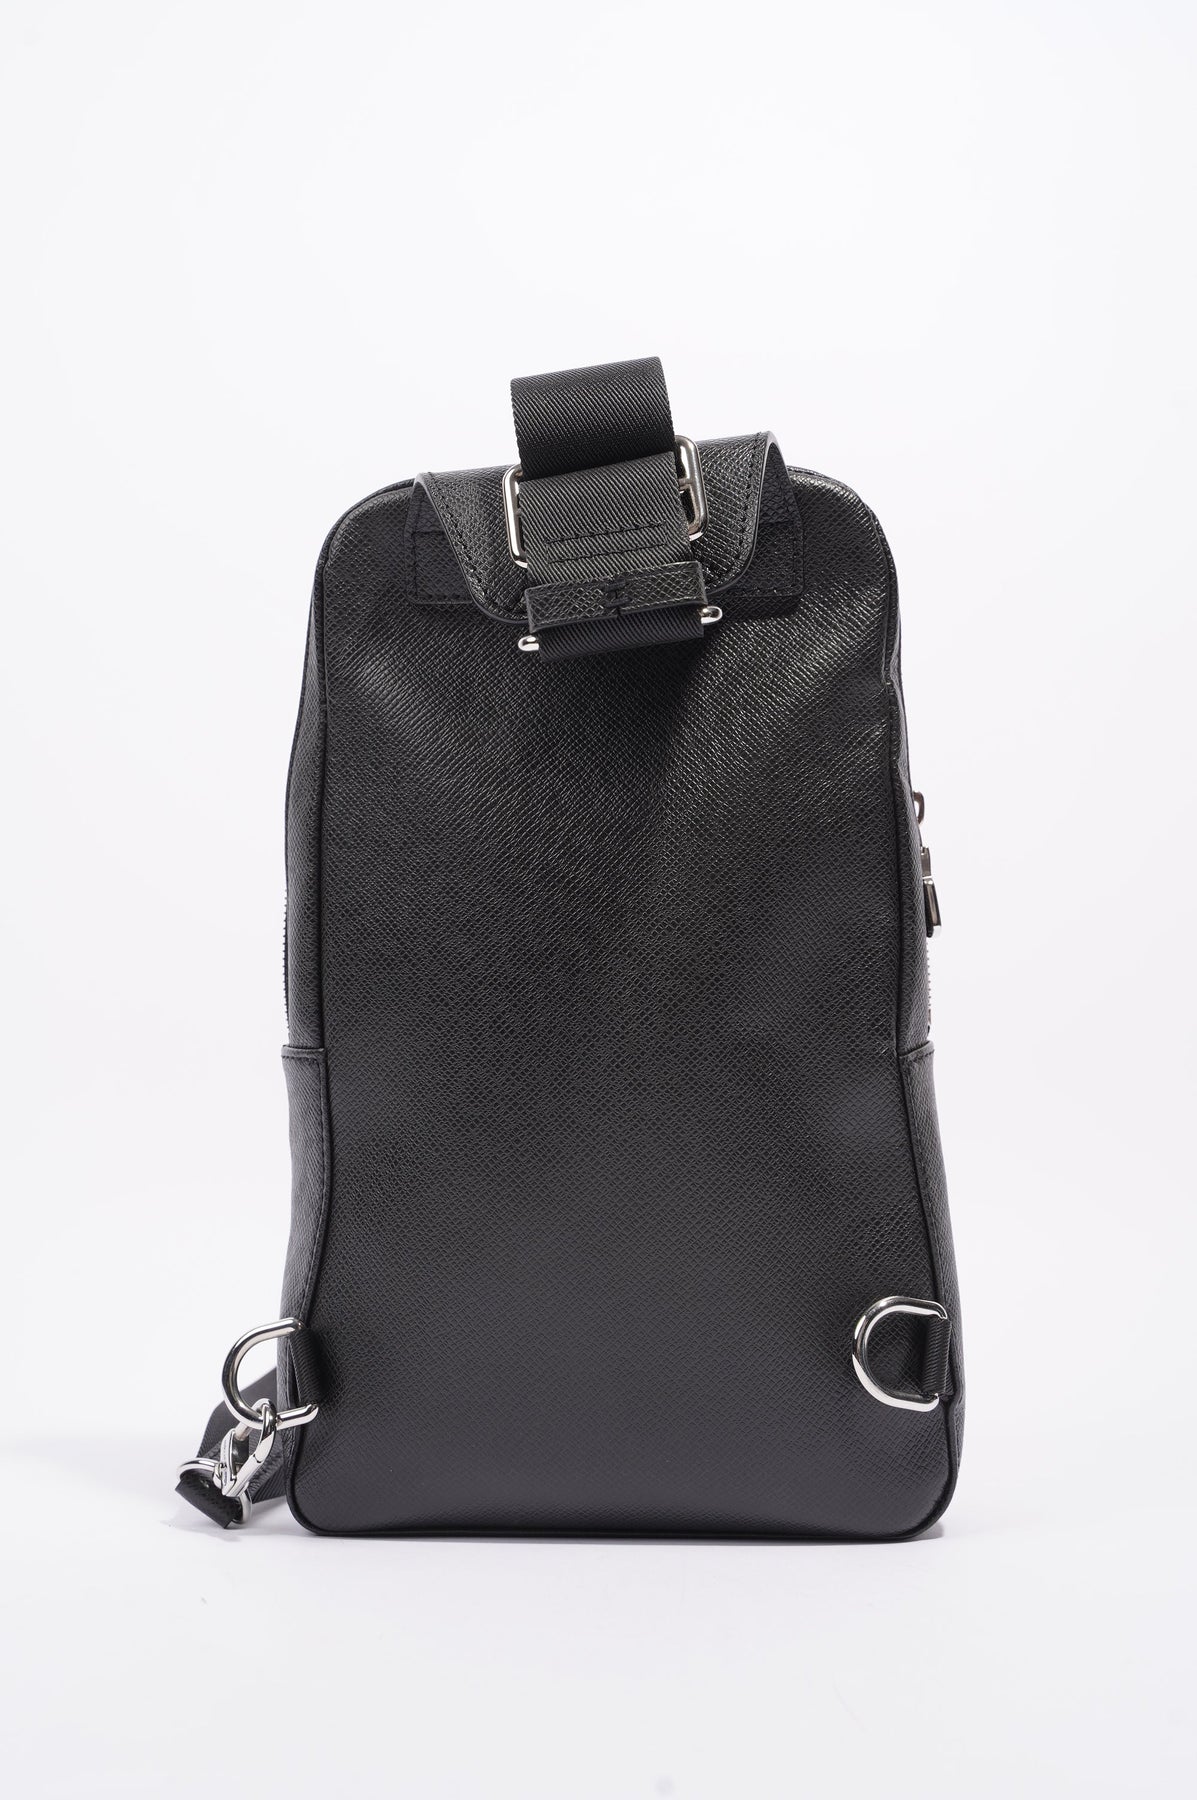 AVENUE SLING BAG High Quality Waist Bags M41719 SAC Designer Men